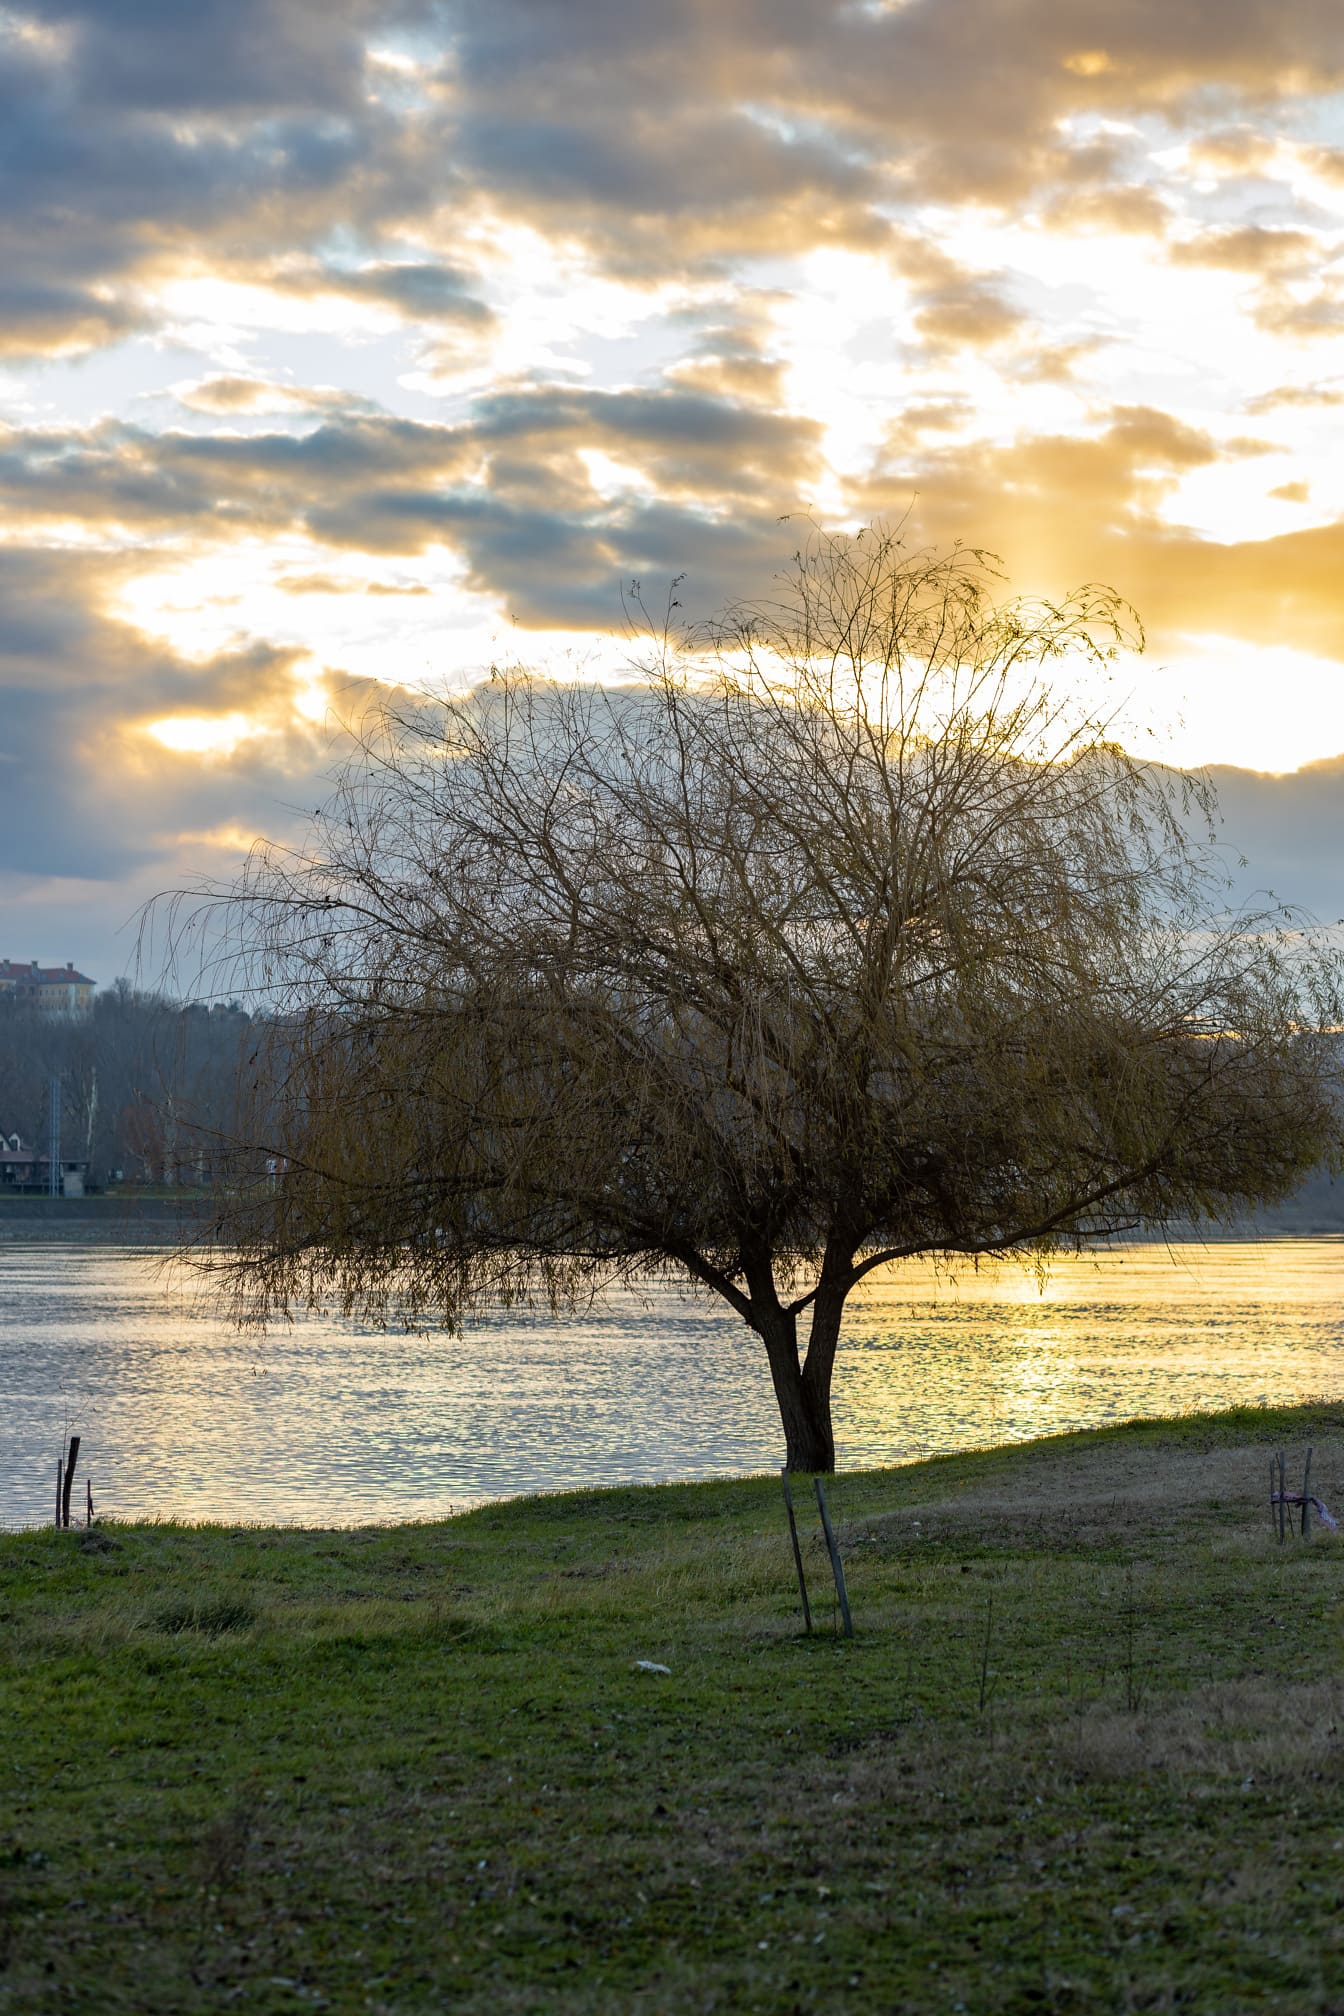 Pohon willow di tepi sungai Danube saat matahari terbenam